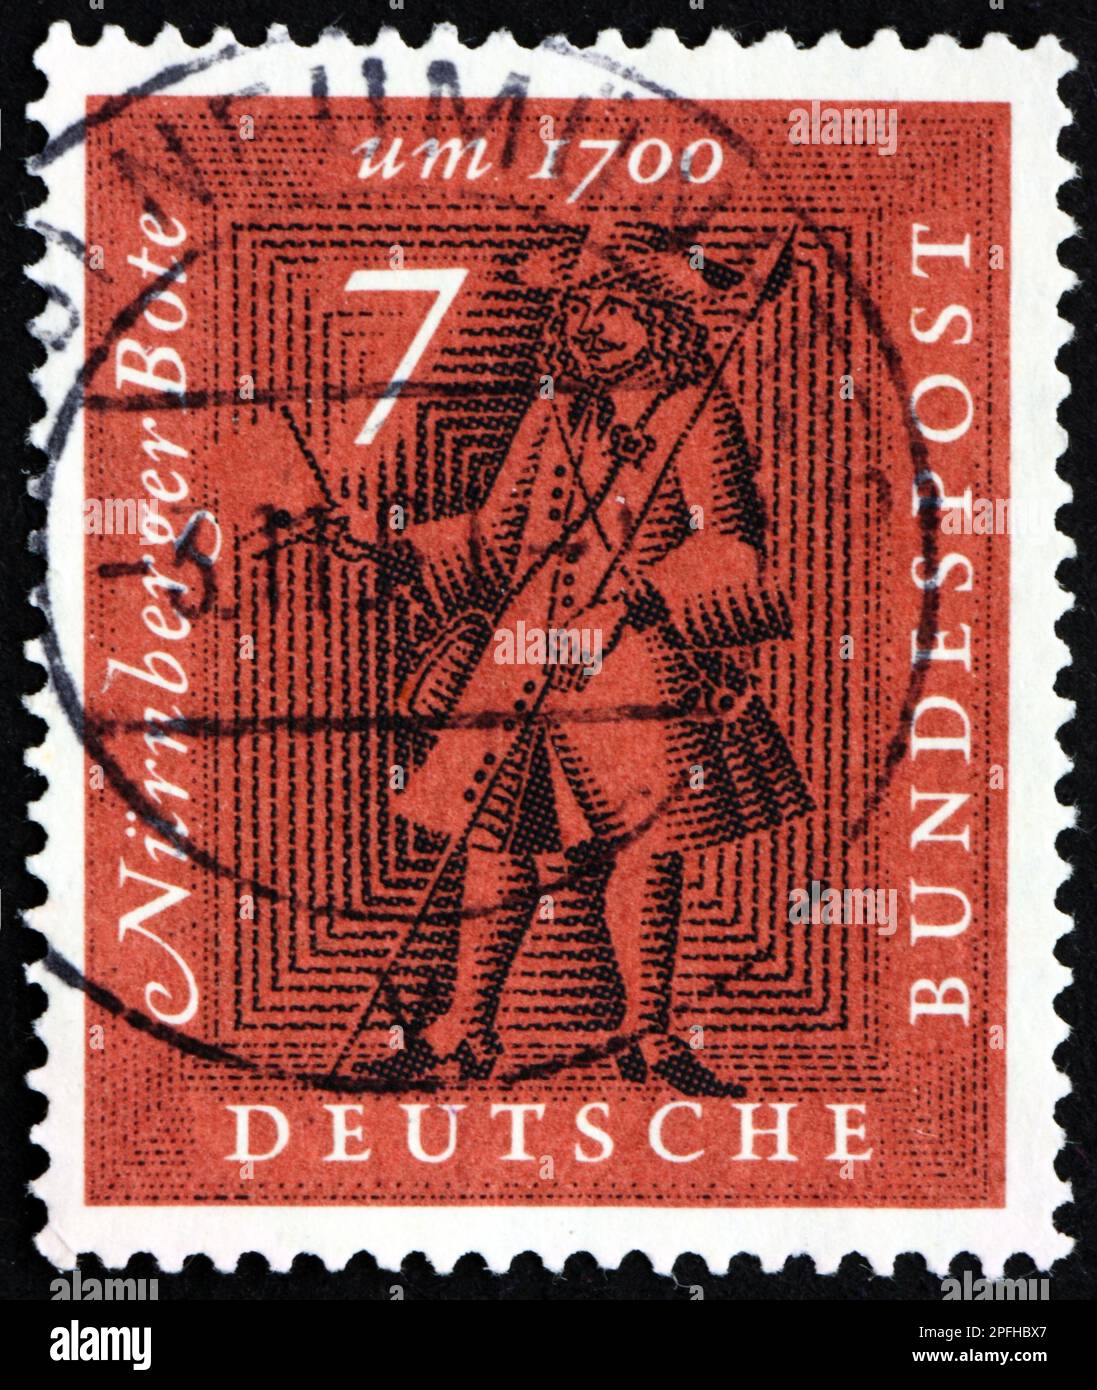 ALEMANIA - CIRCA 1961: Un sello impreso en Alemania muestra el mensajero de Nuremberg, alrededor de 1700, alrededor de 1961 Foto de stock